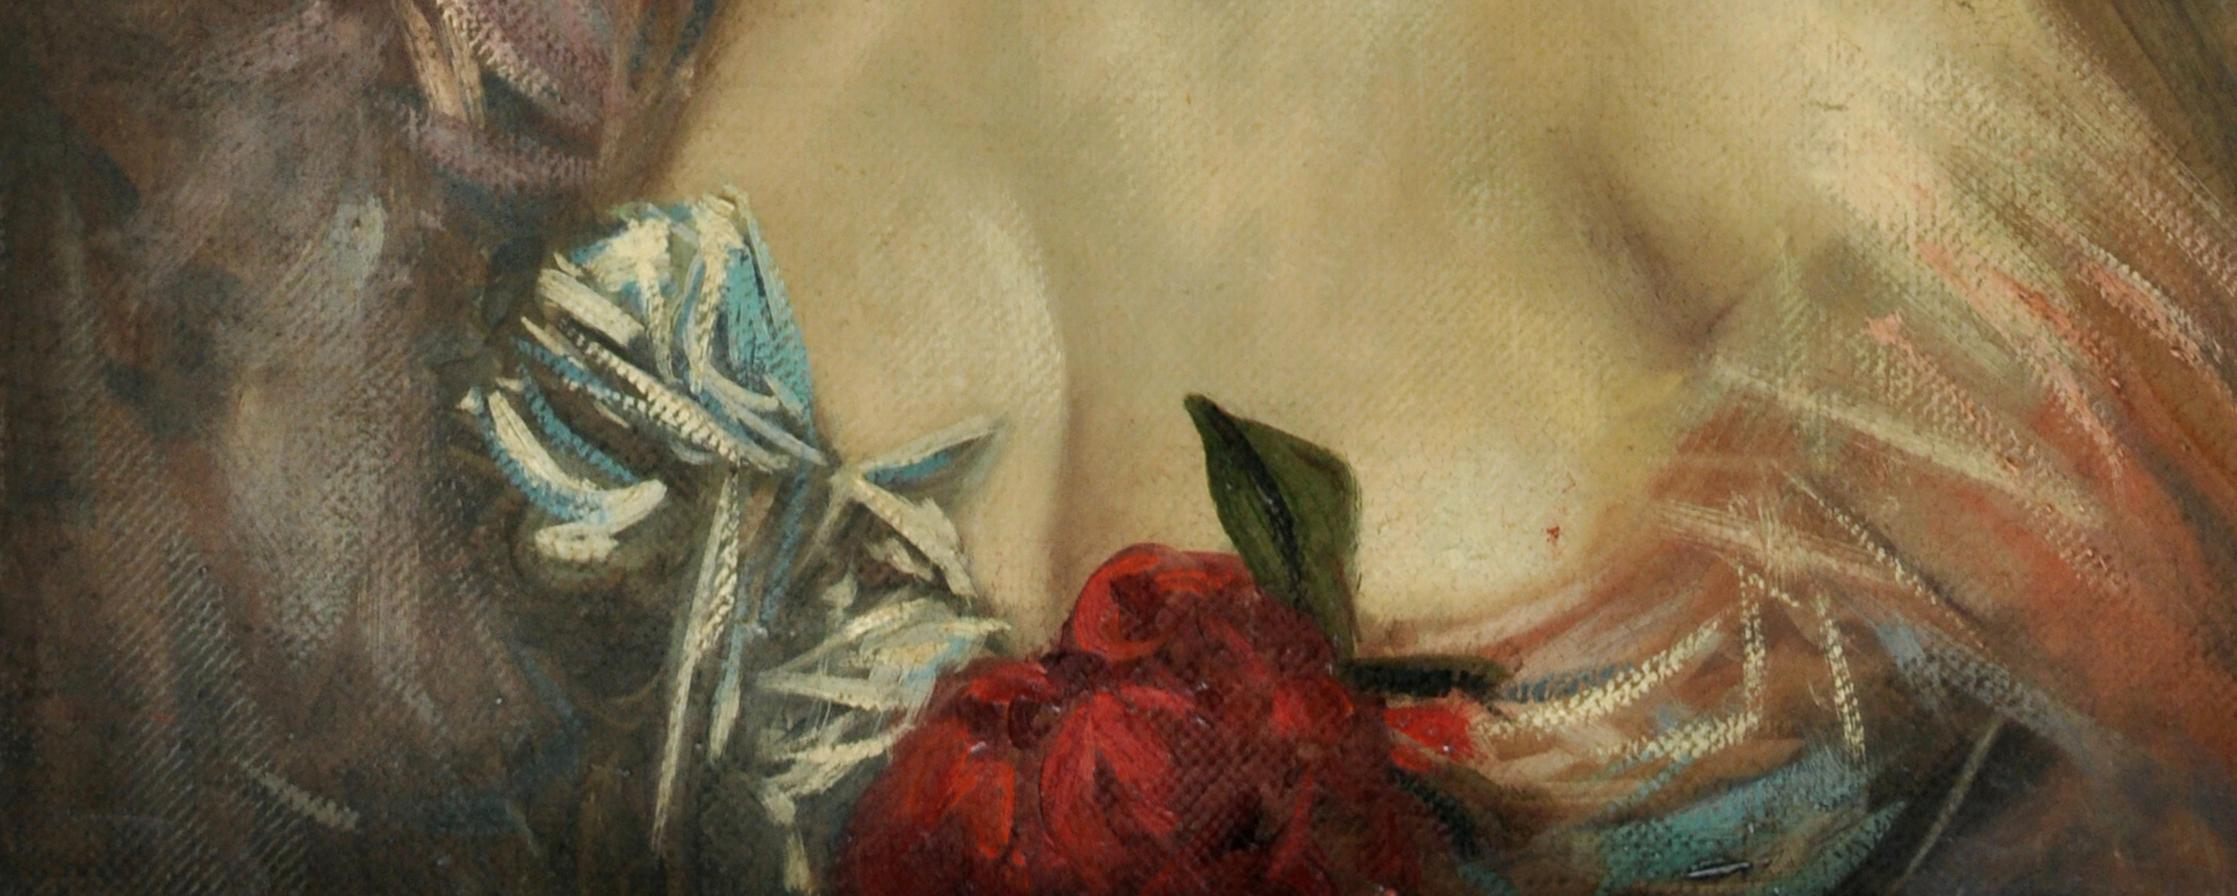 Portrait de dame - Ciro de Rosa Italia 2002 - Huile sur toile cm. 63x47
Le tableau de Ciro représente une belle femme noble avec une robe élégante et sophistiquée, il réinterprète une des œuvres de Giovanni Boldini, peintre italien mais parisien